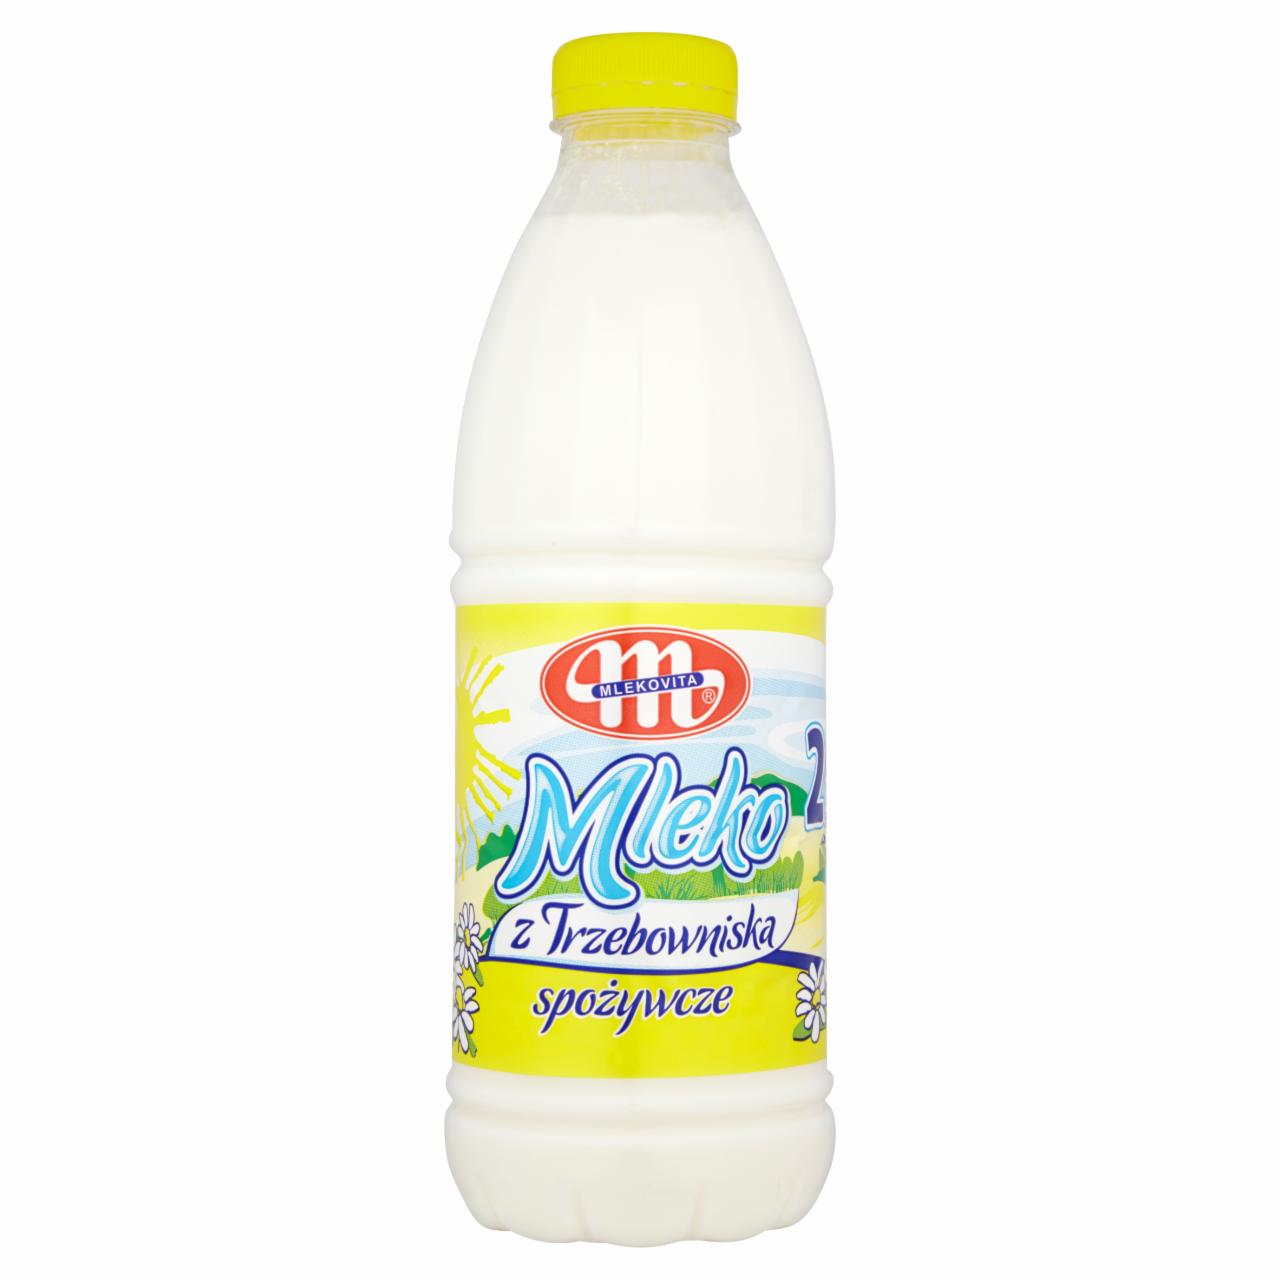 Zdjęcia - Mlekovita Mleko z Trzebowniska spożywcze 2% 1 l